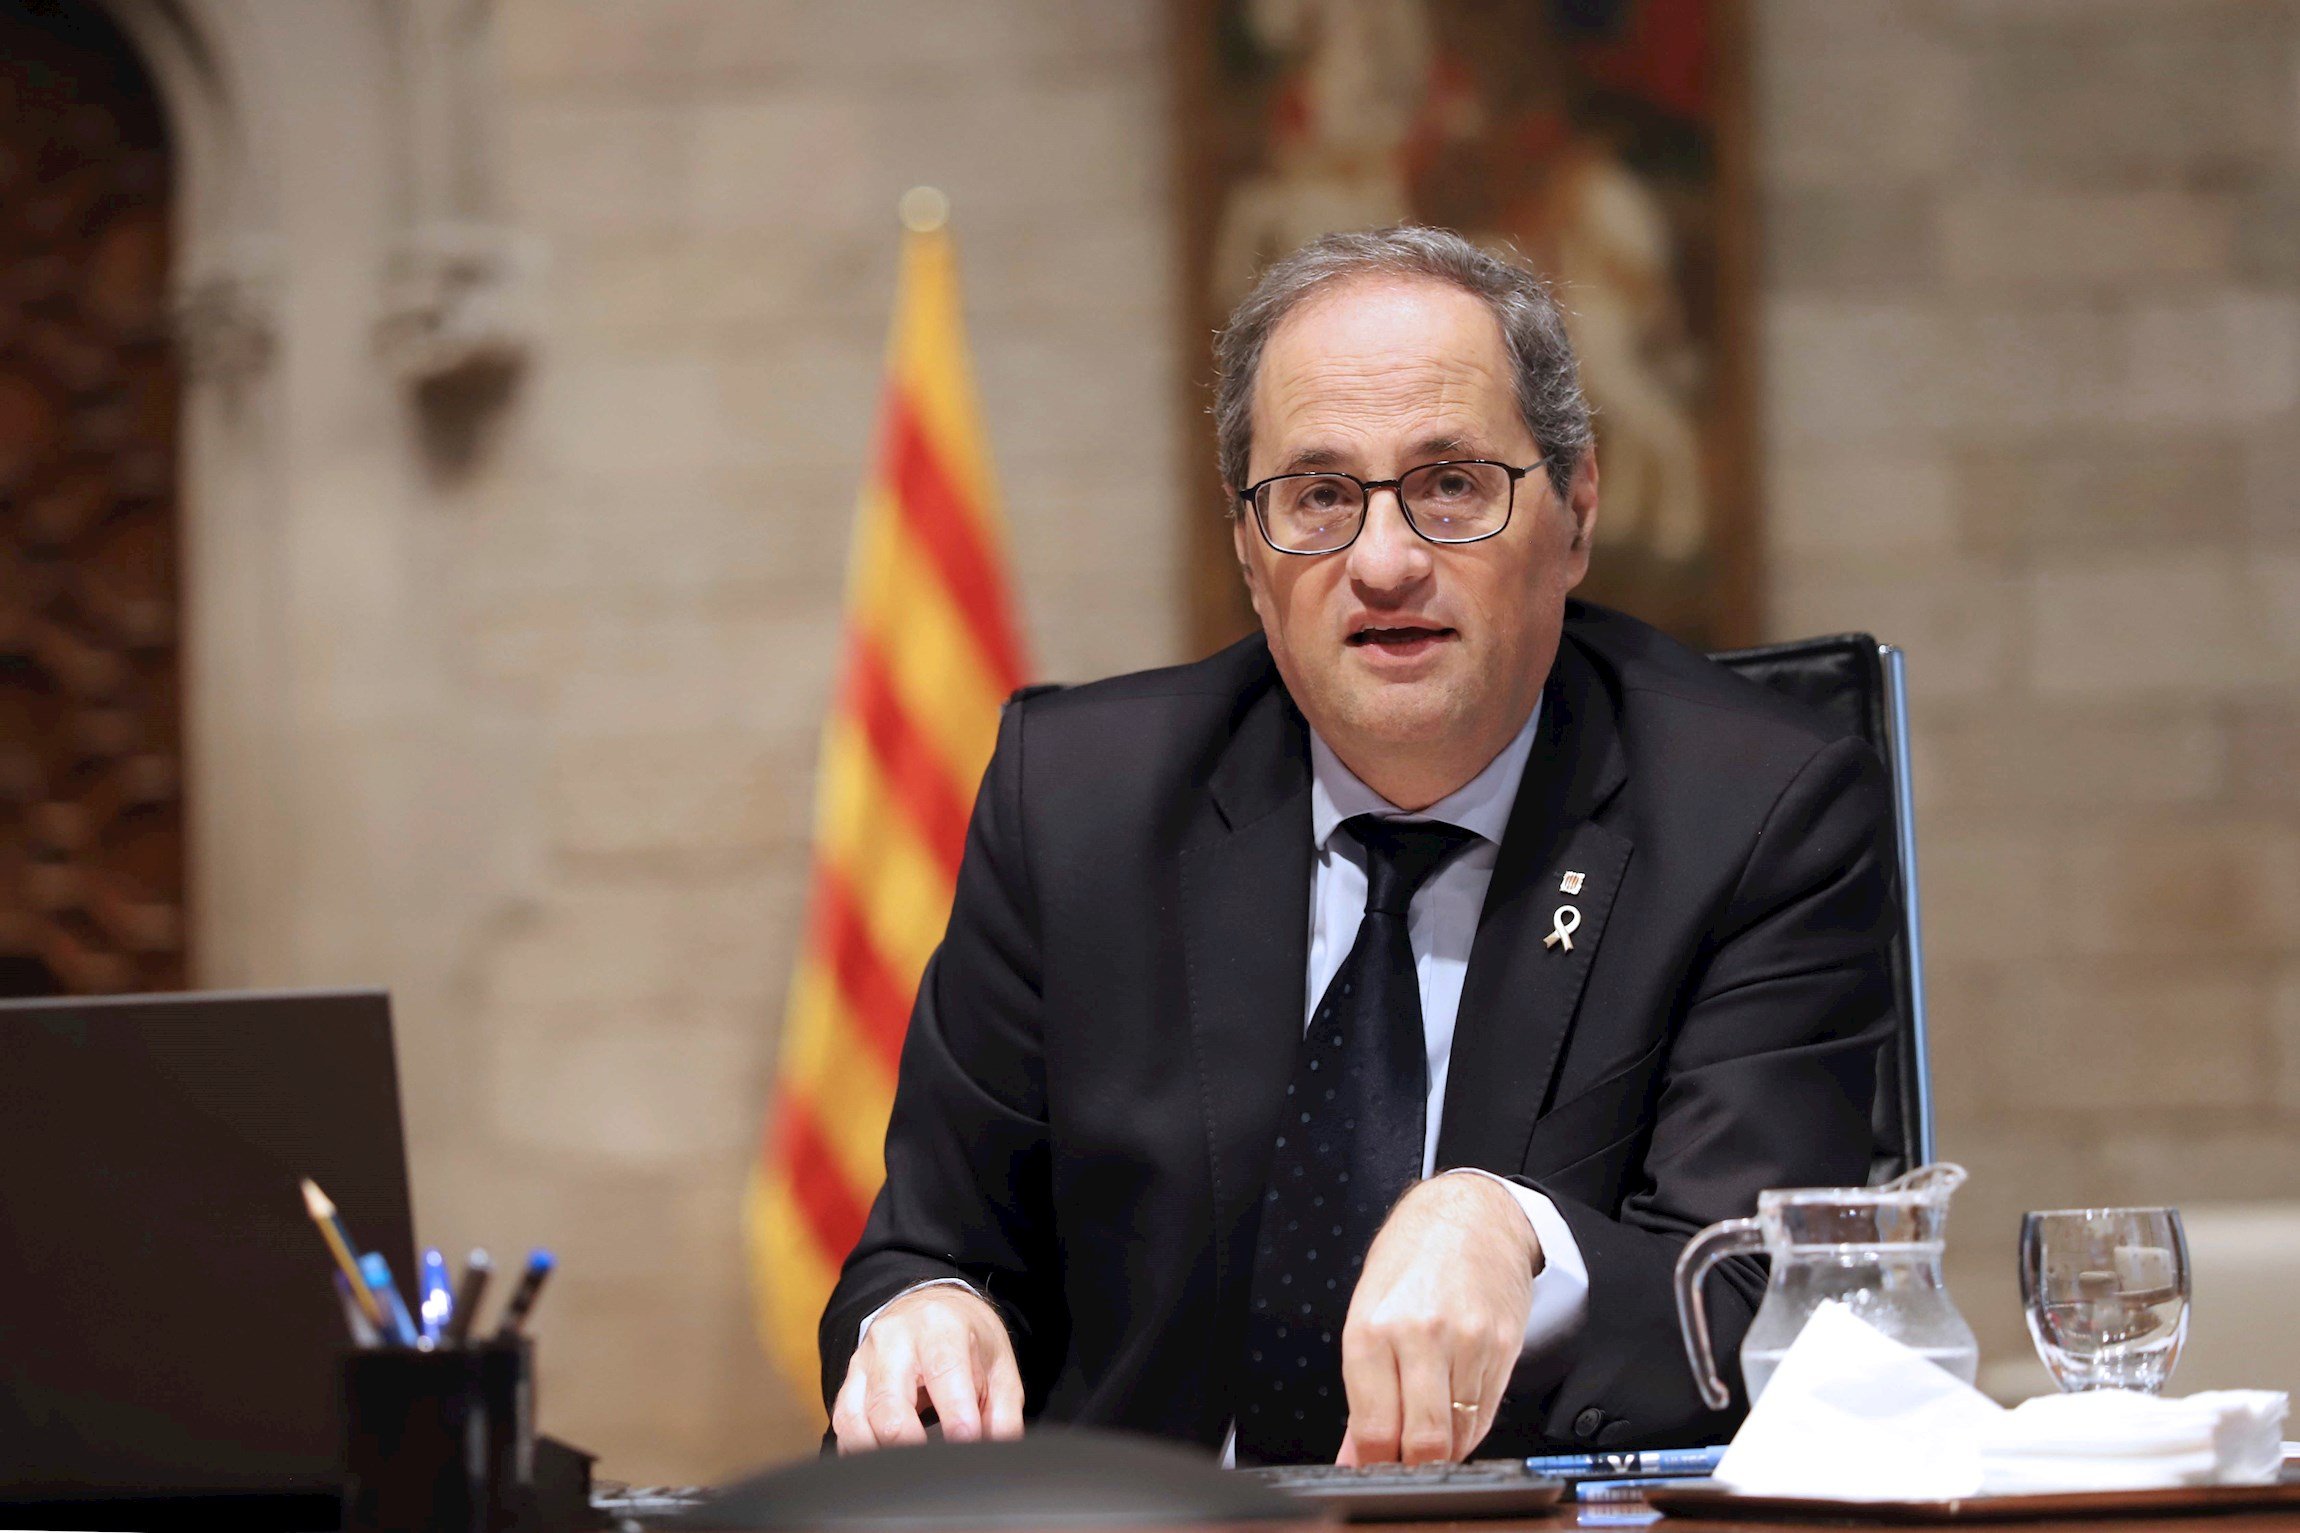 Alcaldes del PSC demanen a Torra que avali la mobilitat de Barcelona i les àrees